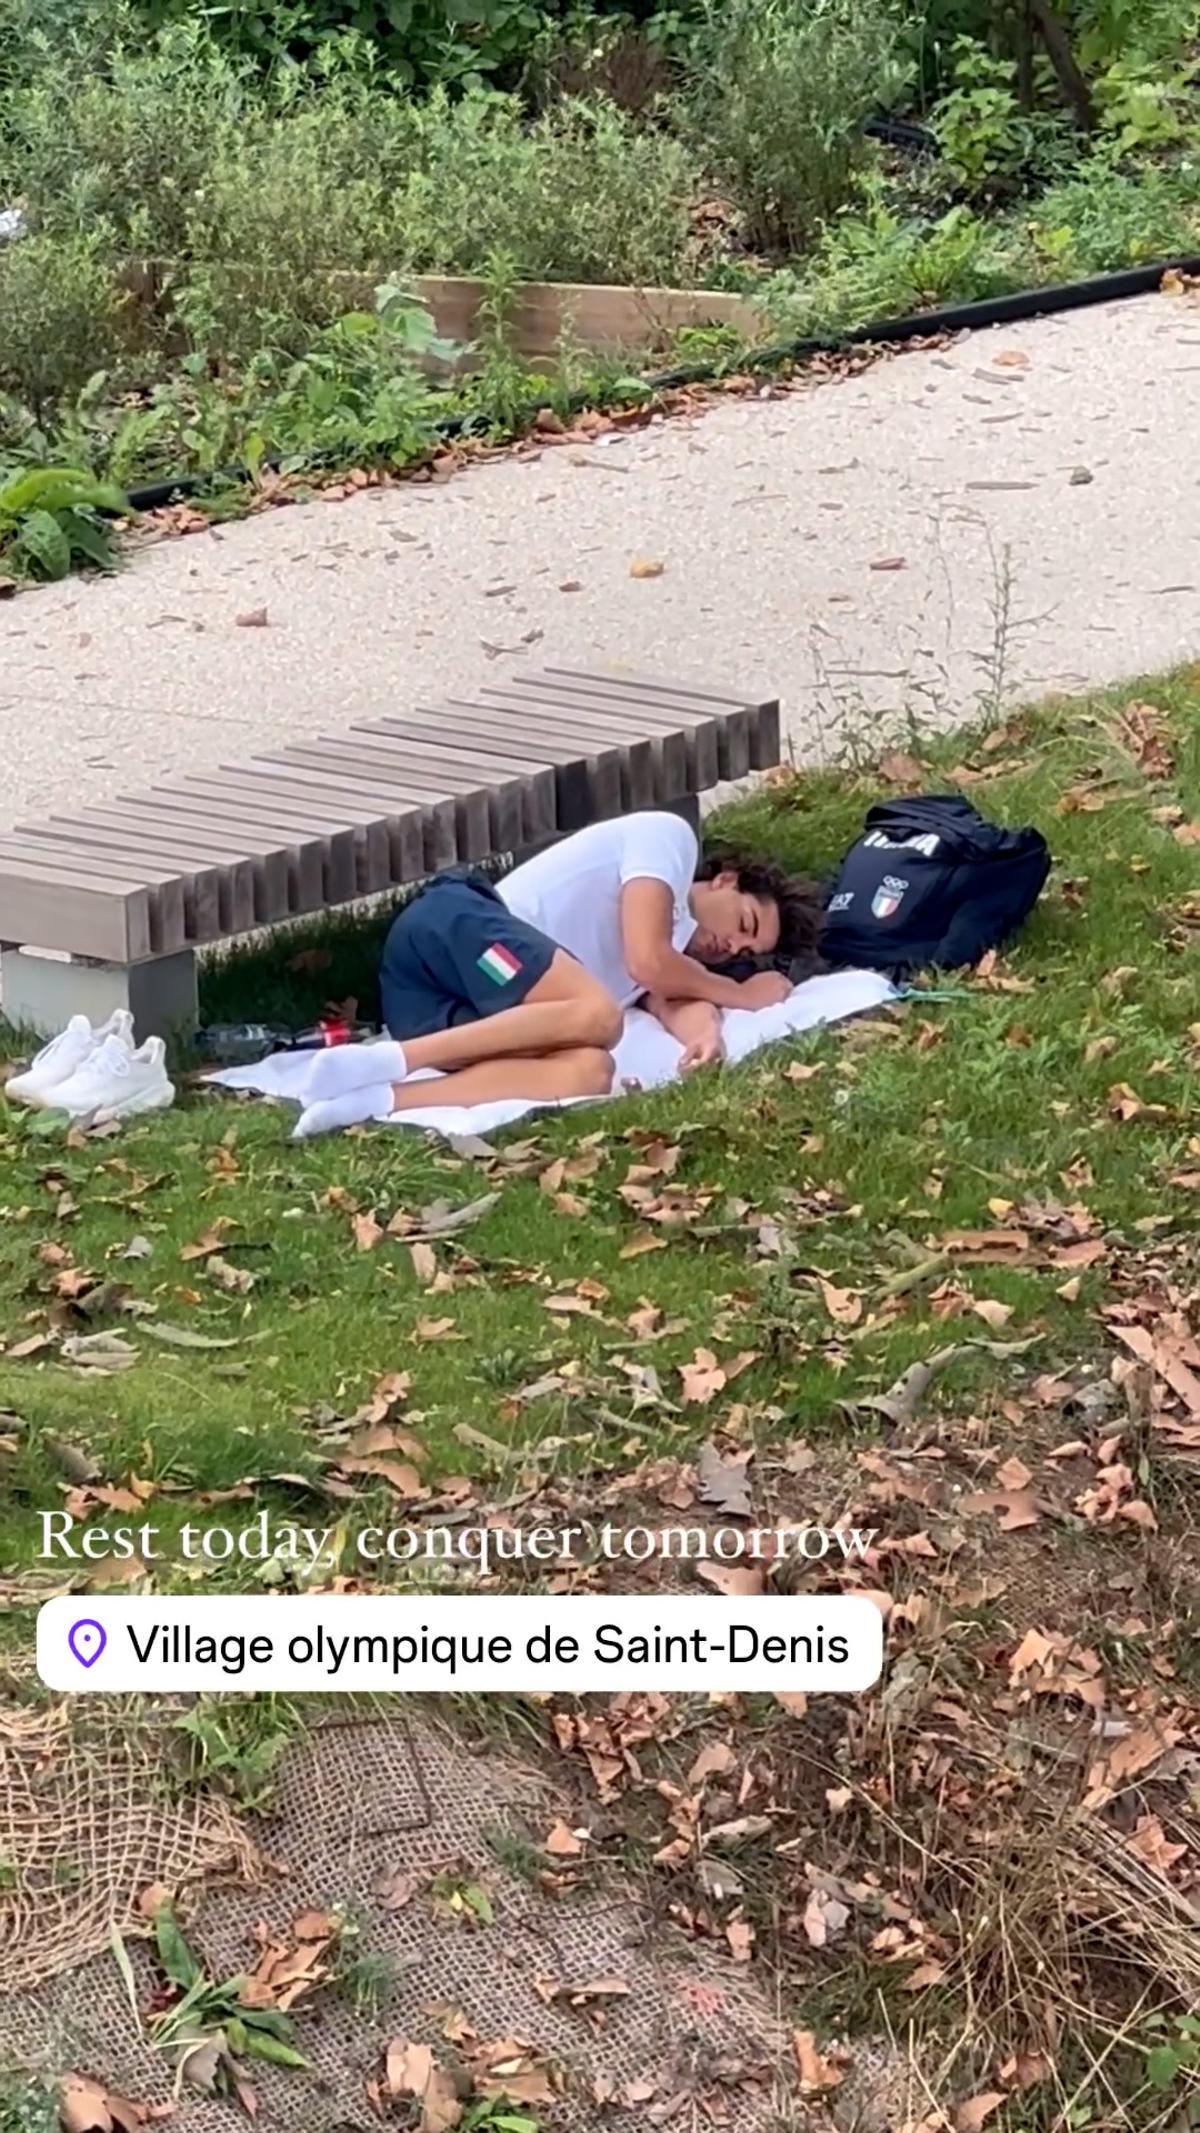 Un medallista de Italia duerme en la calle por el calor extremo en la Villa Olímpica